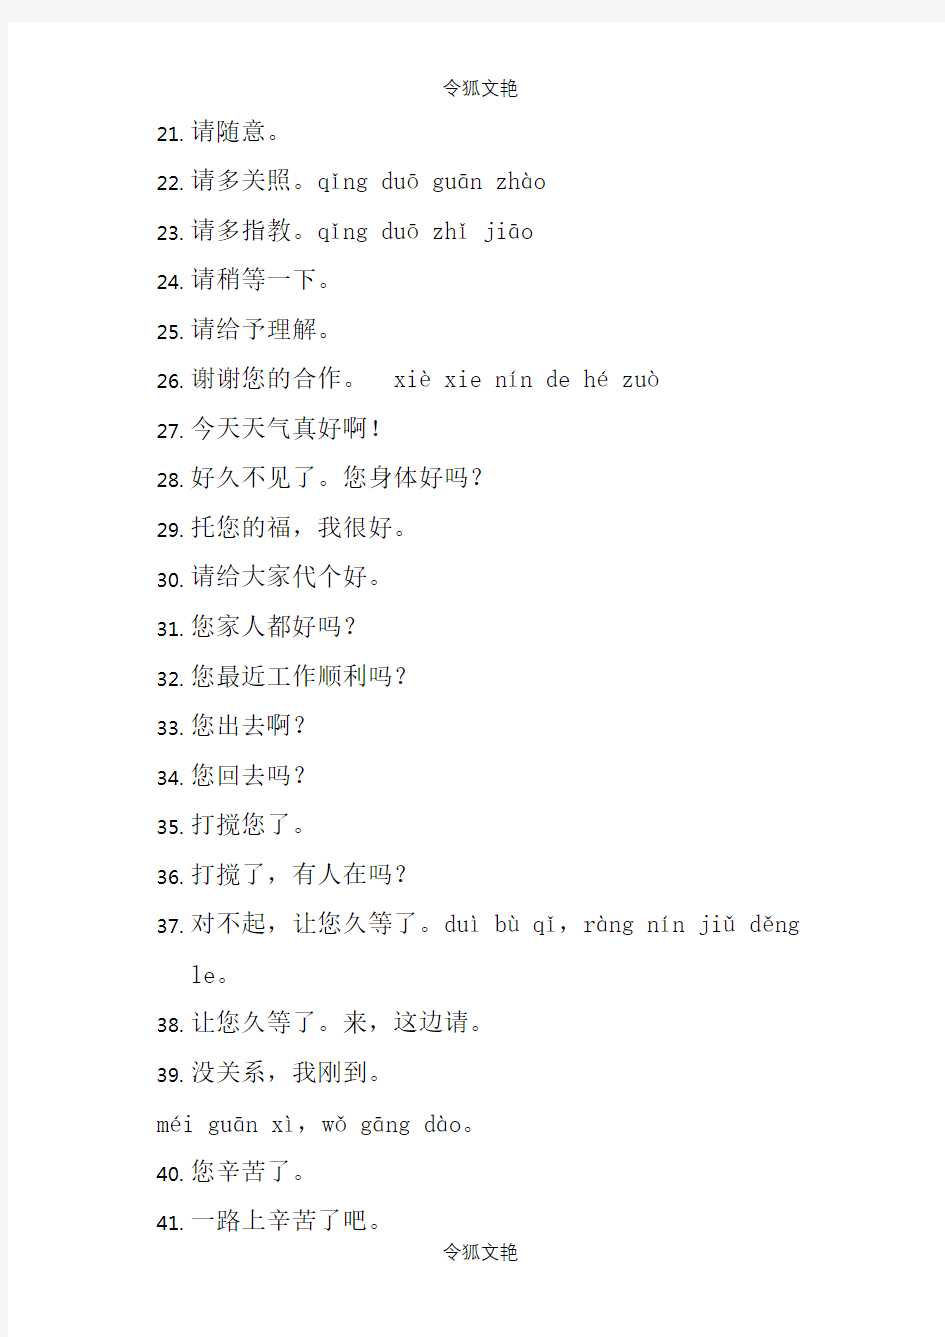 常用汉语用语100句(更新)之令狐文艳创作